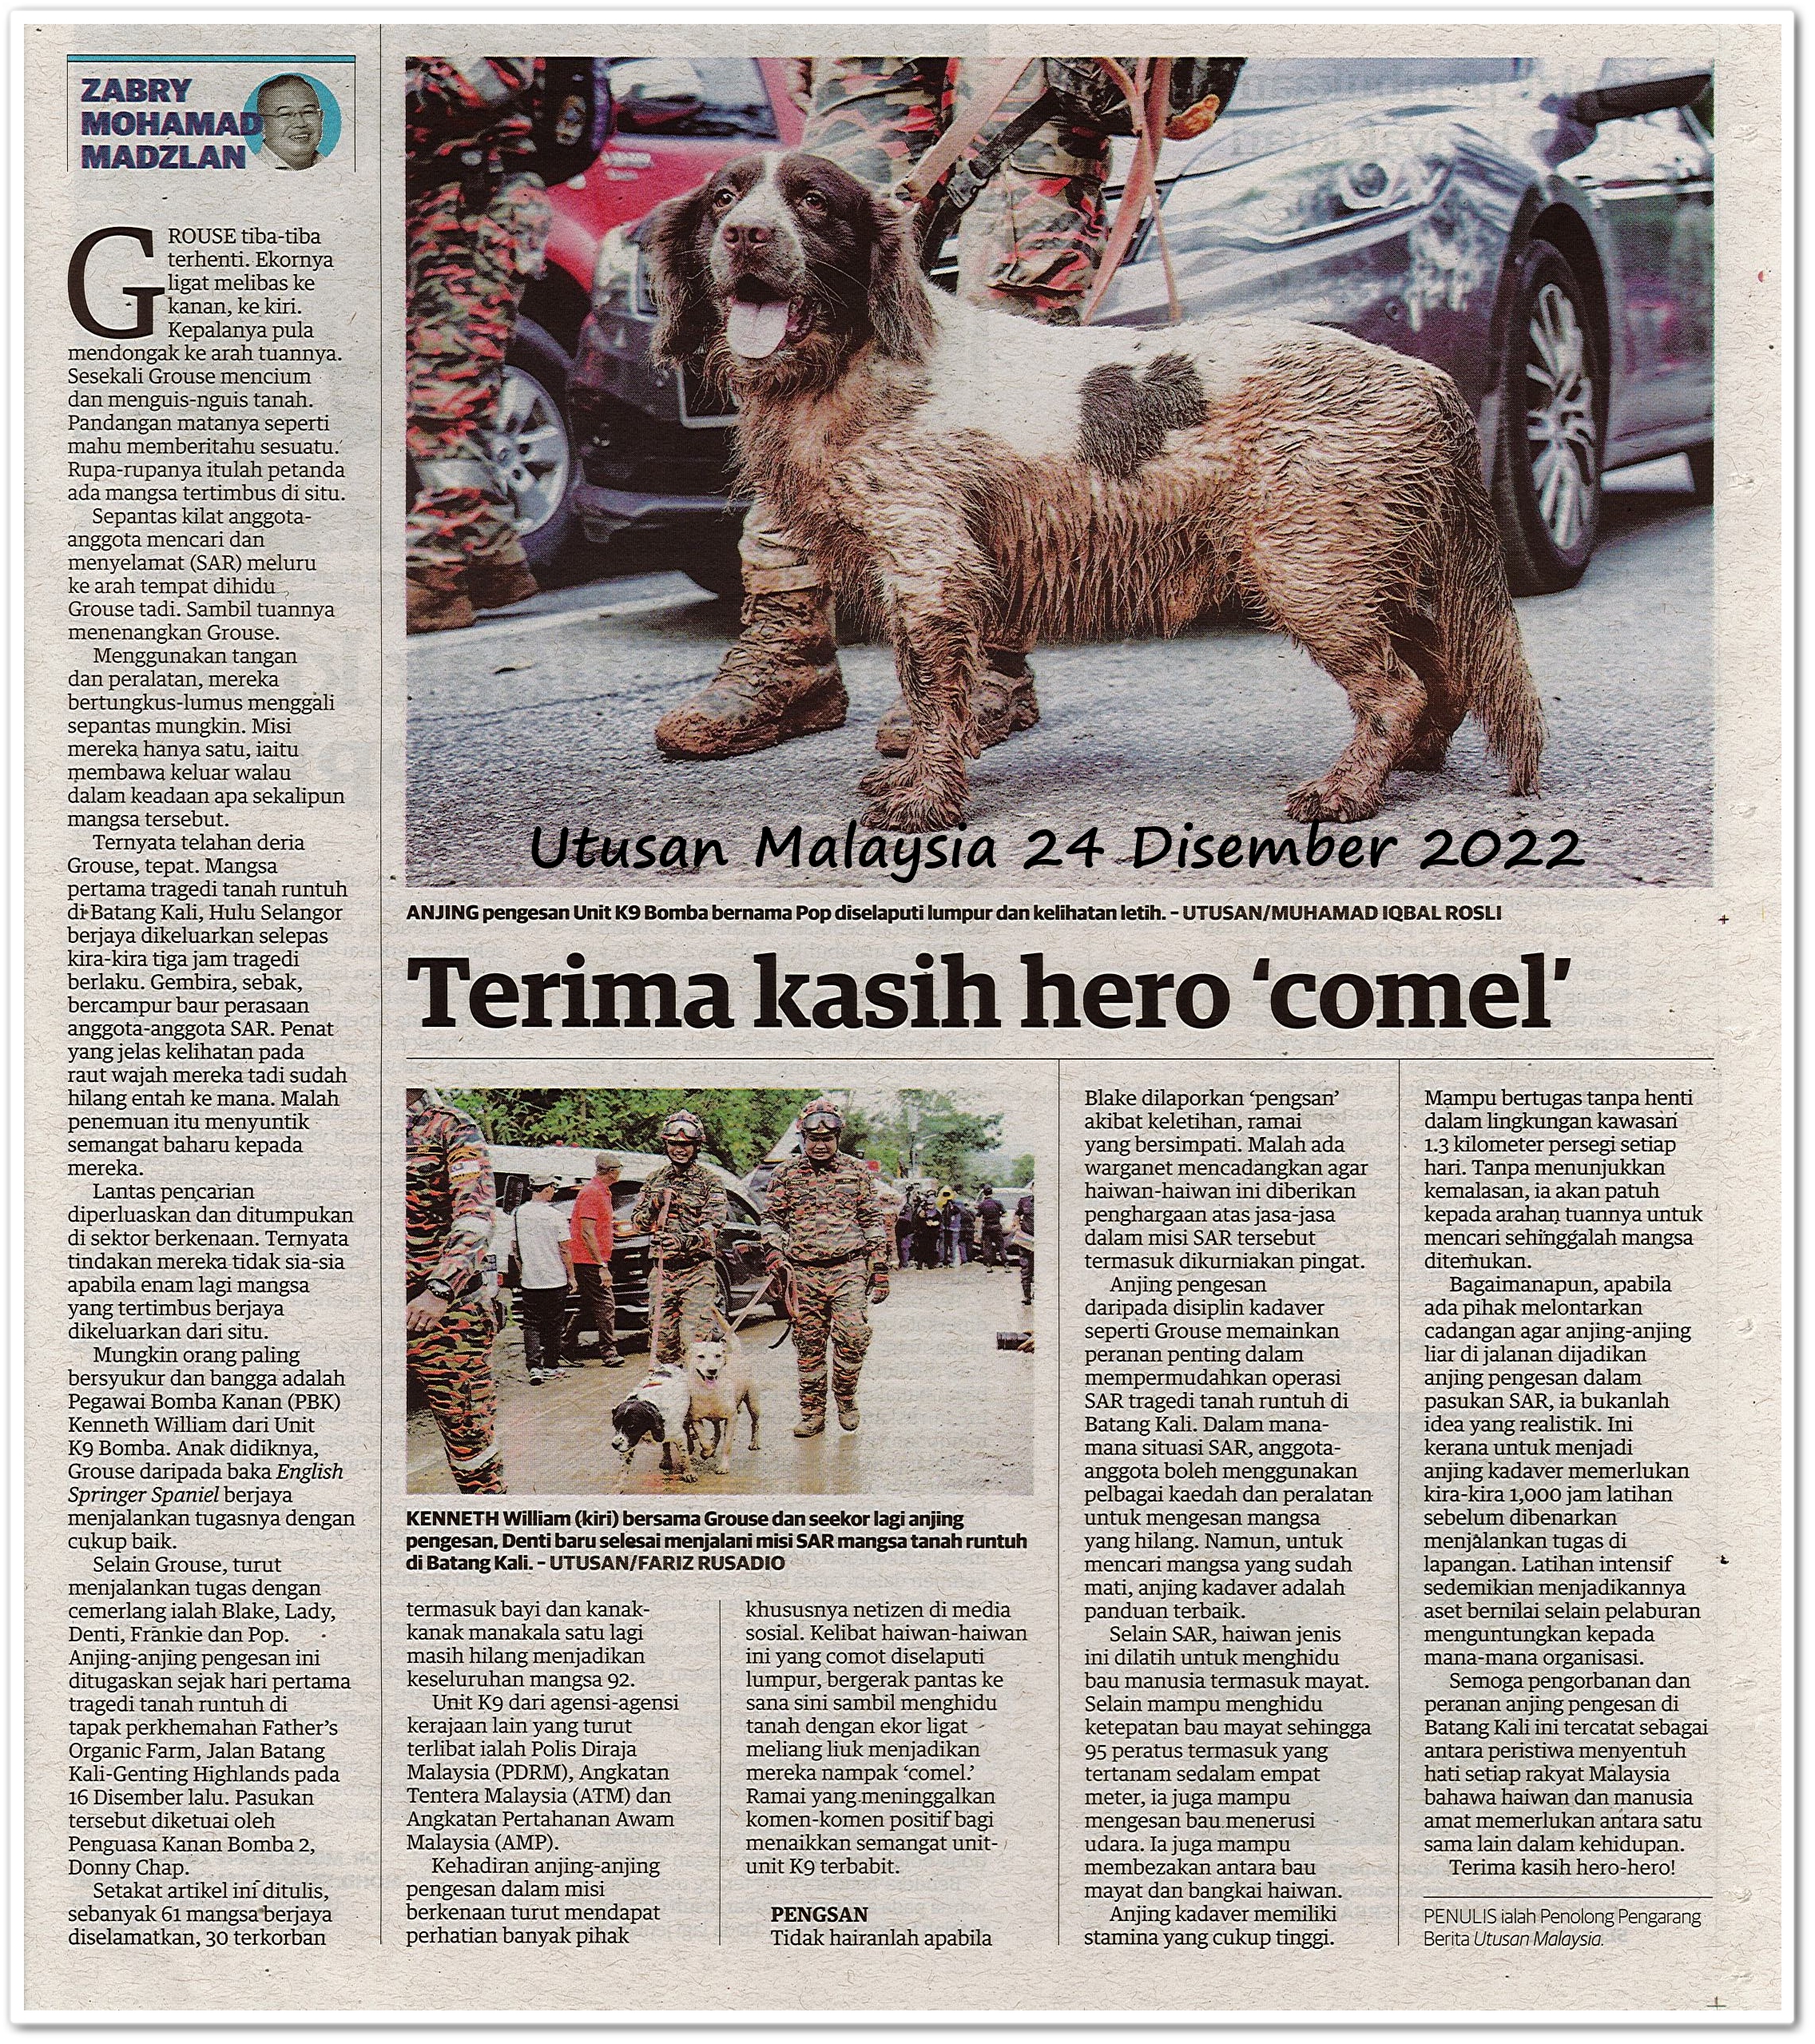 Terima kasih hero 'comel' - Keratan akhbar Utusan Malaysia 24 Disember 2022